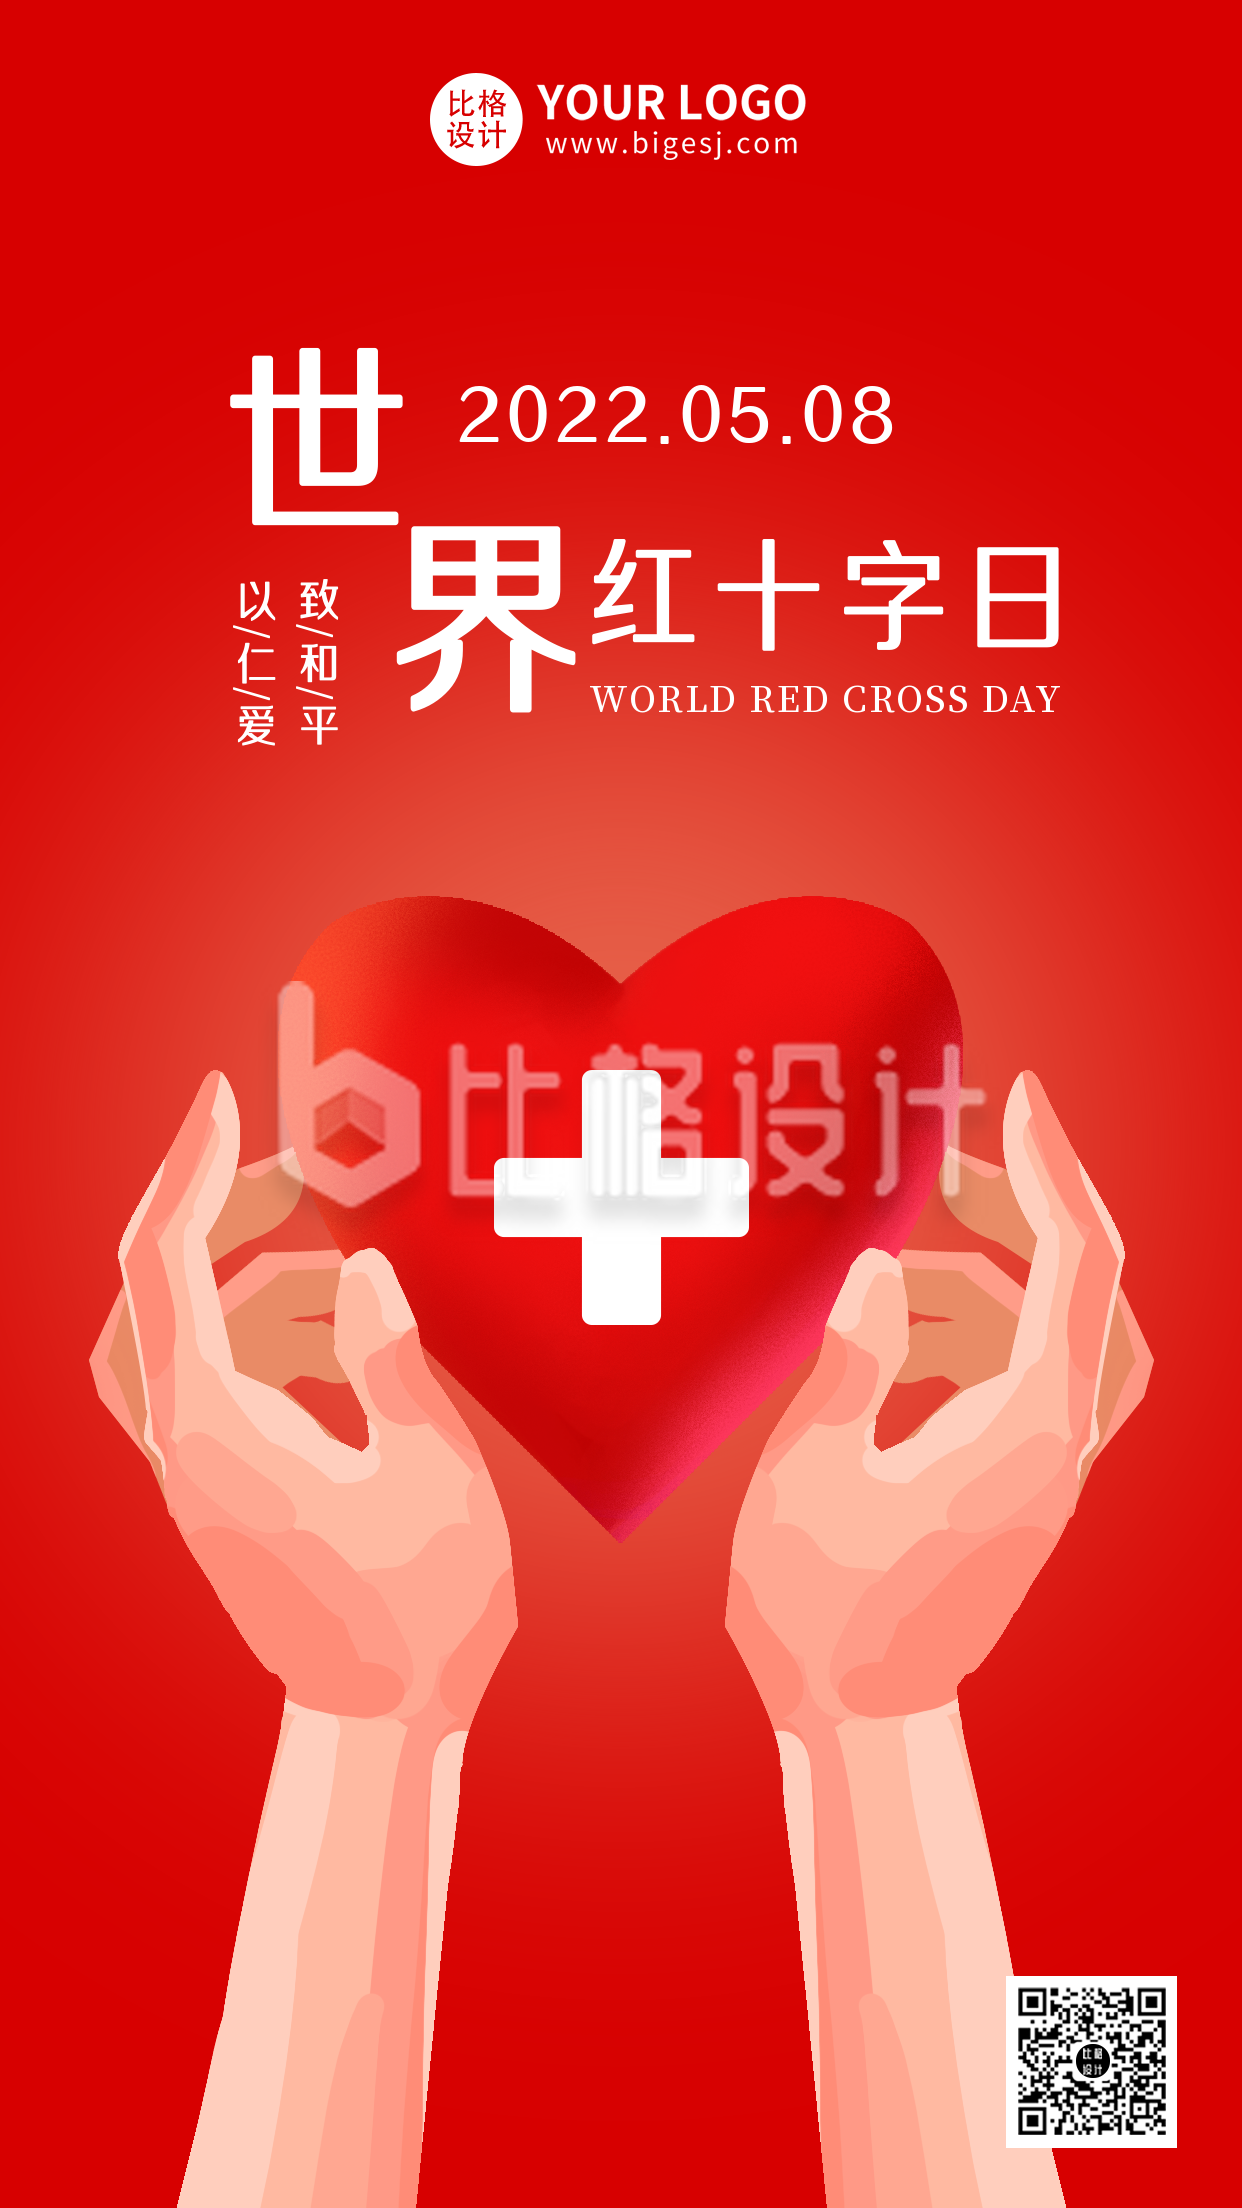 世界红十字日手绘爱心宣传手机海报